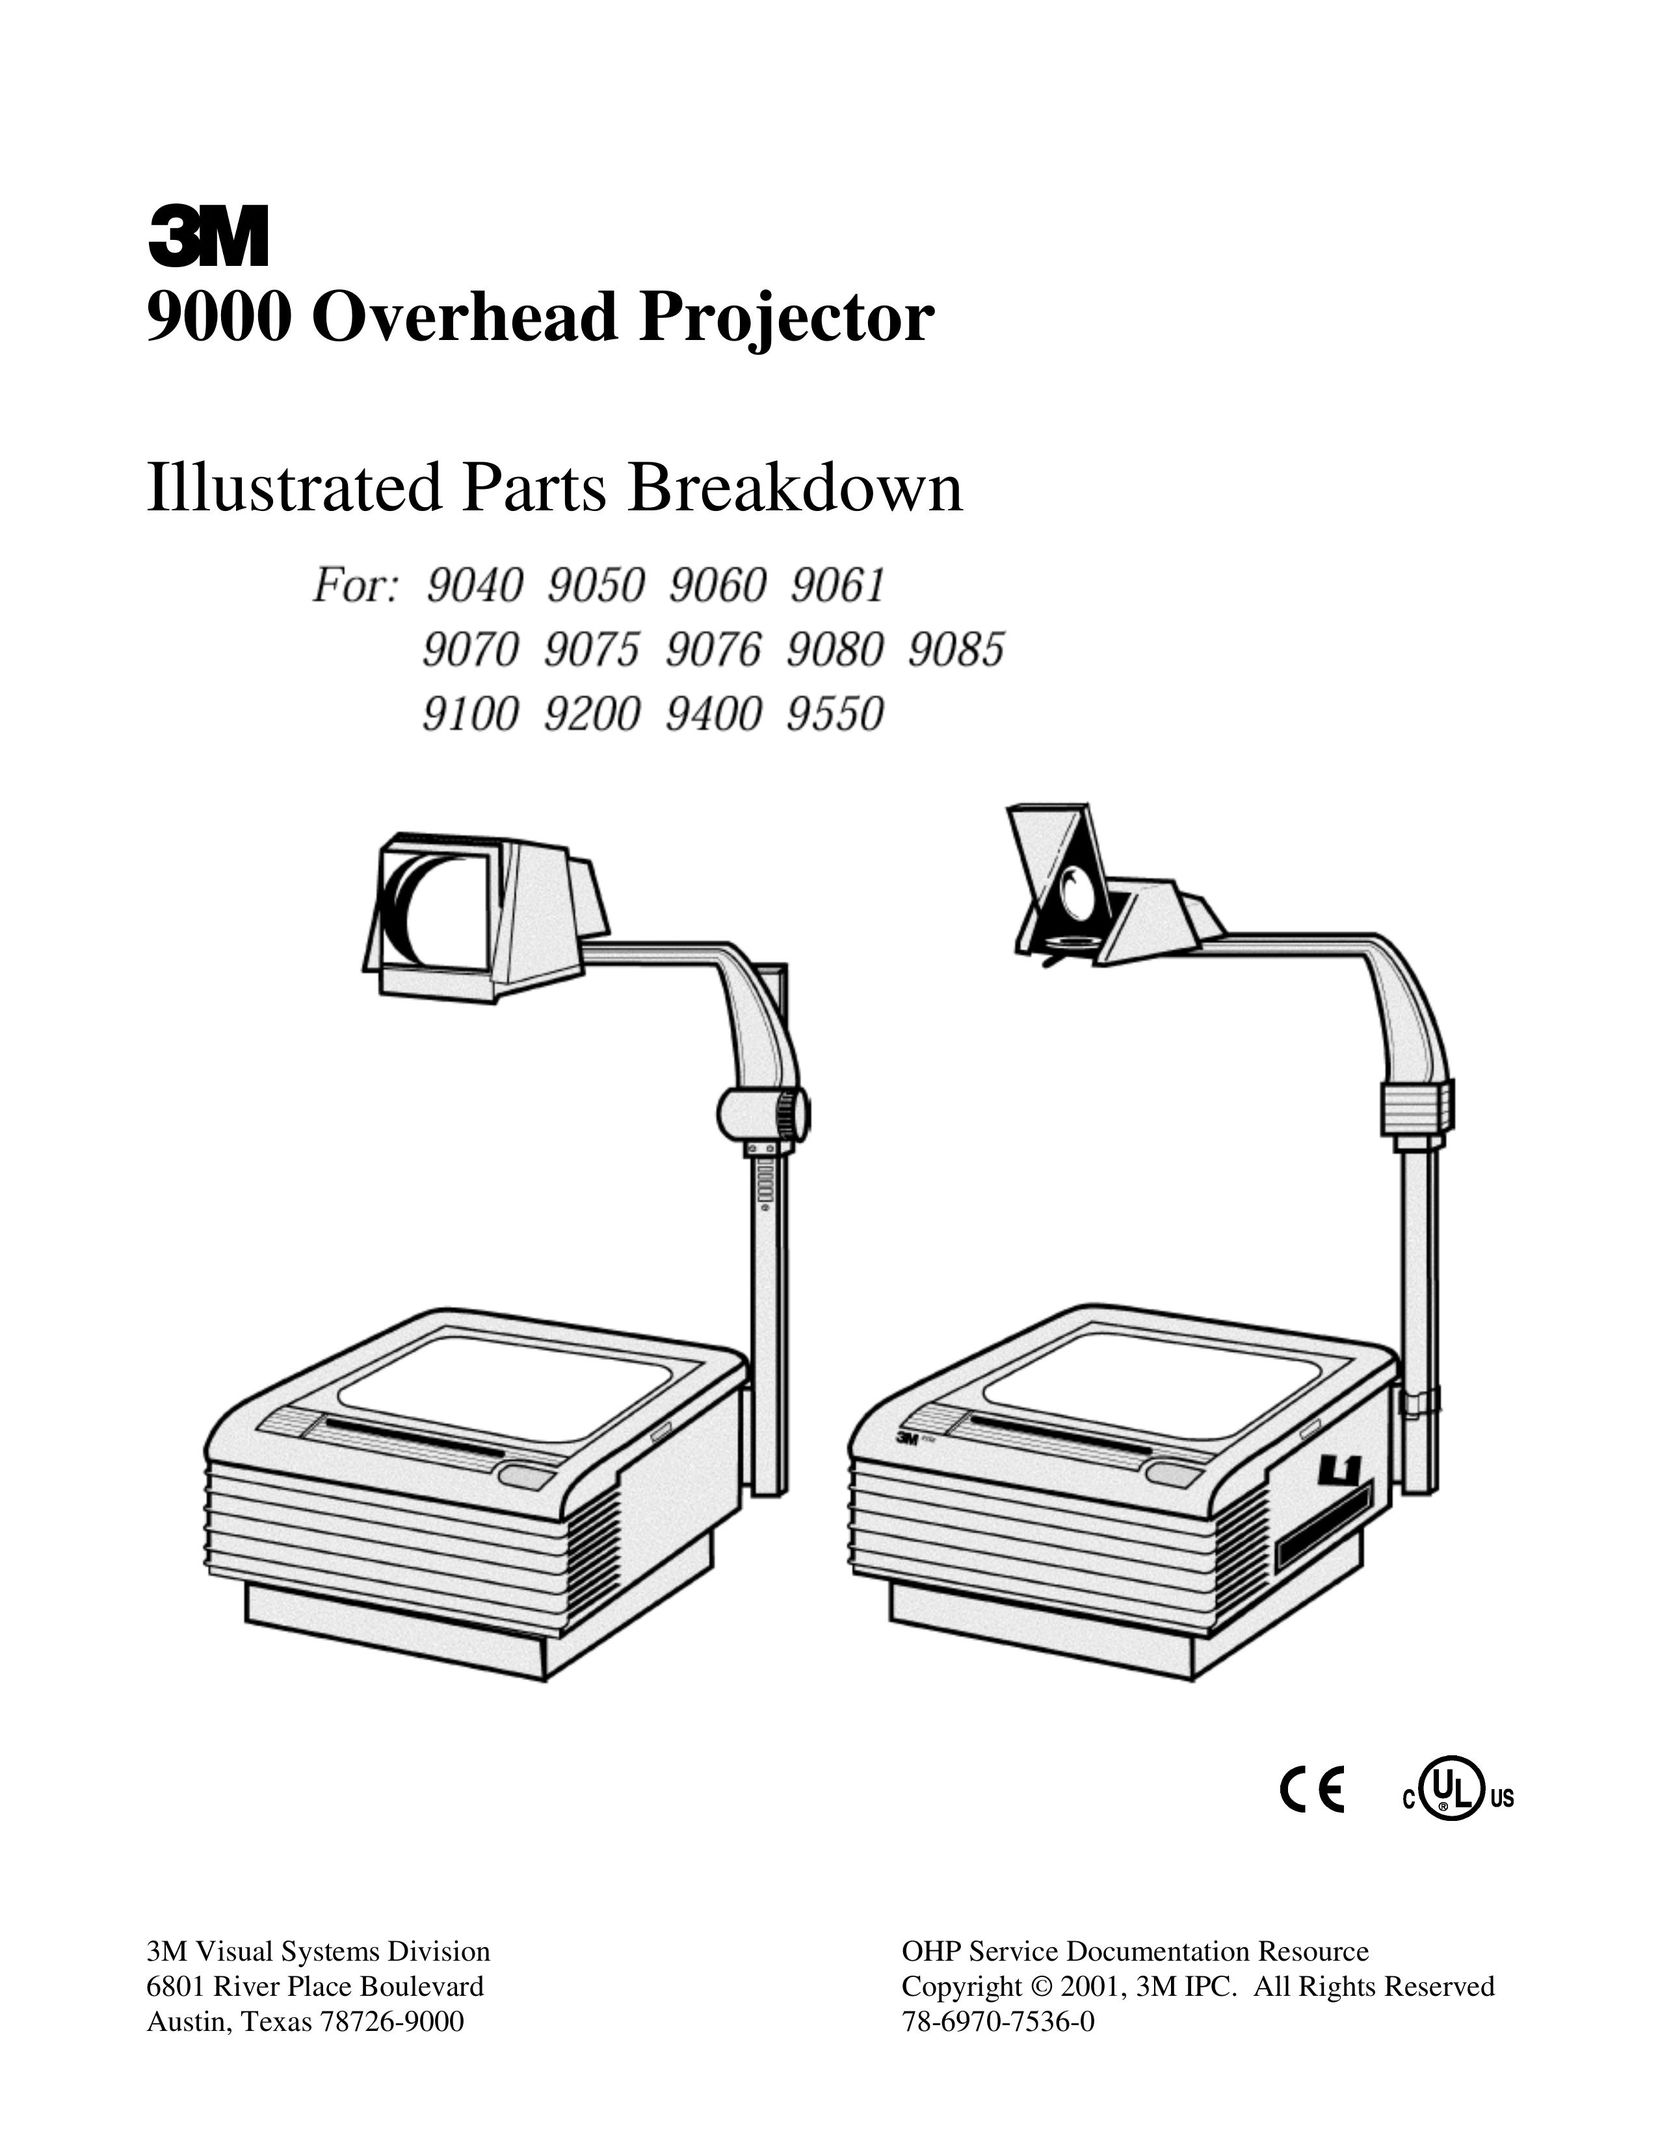 Xerox 9061 Projector User Manual